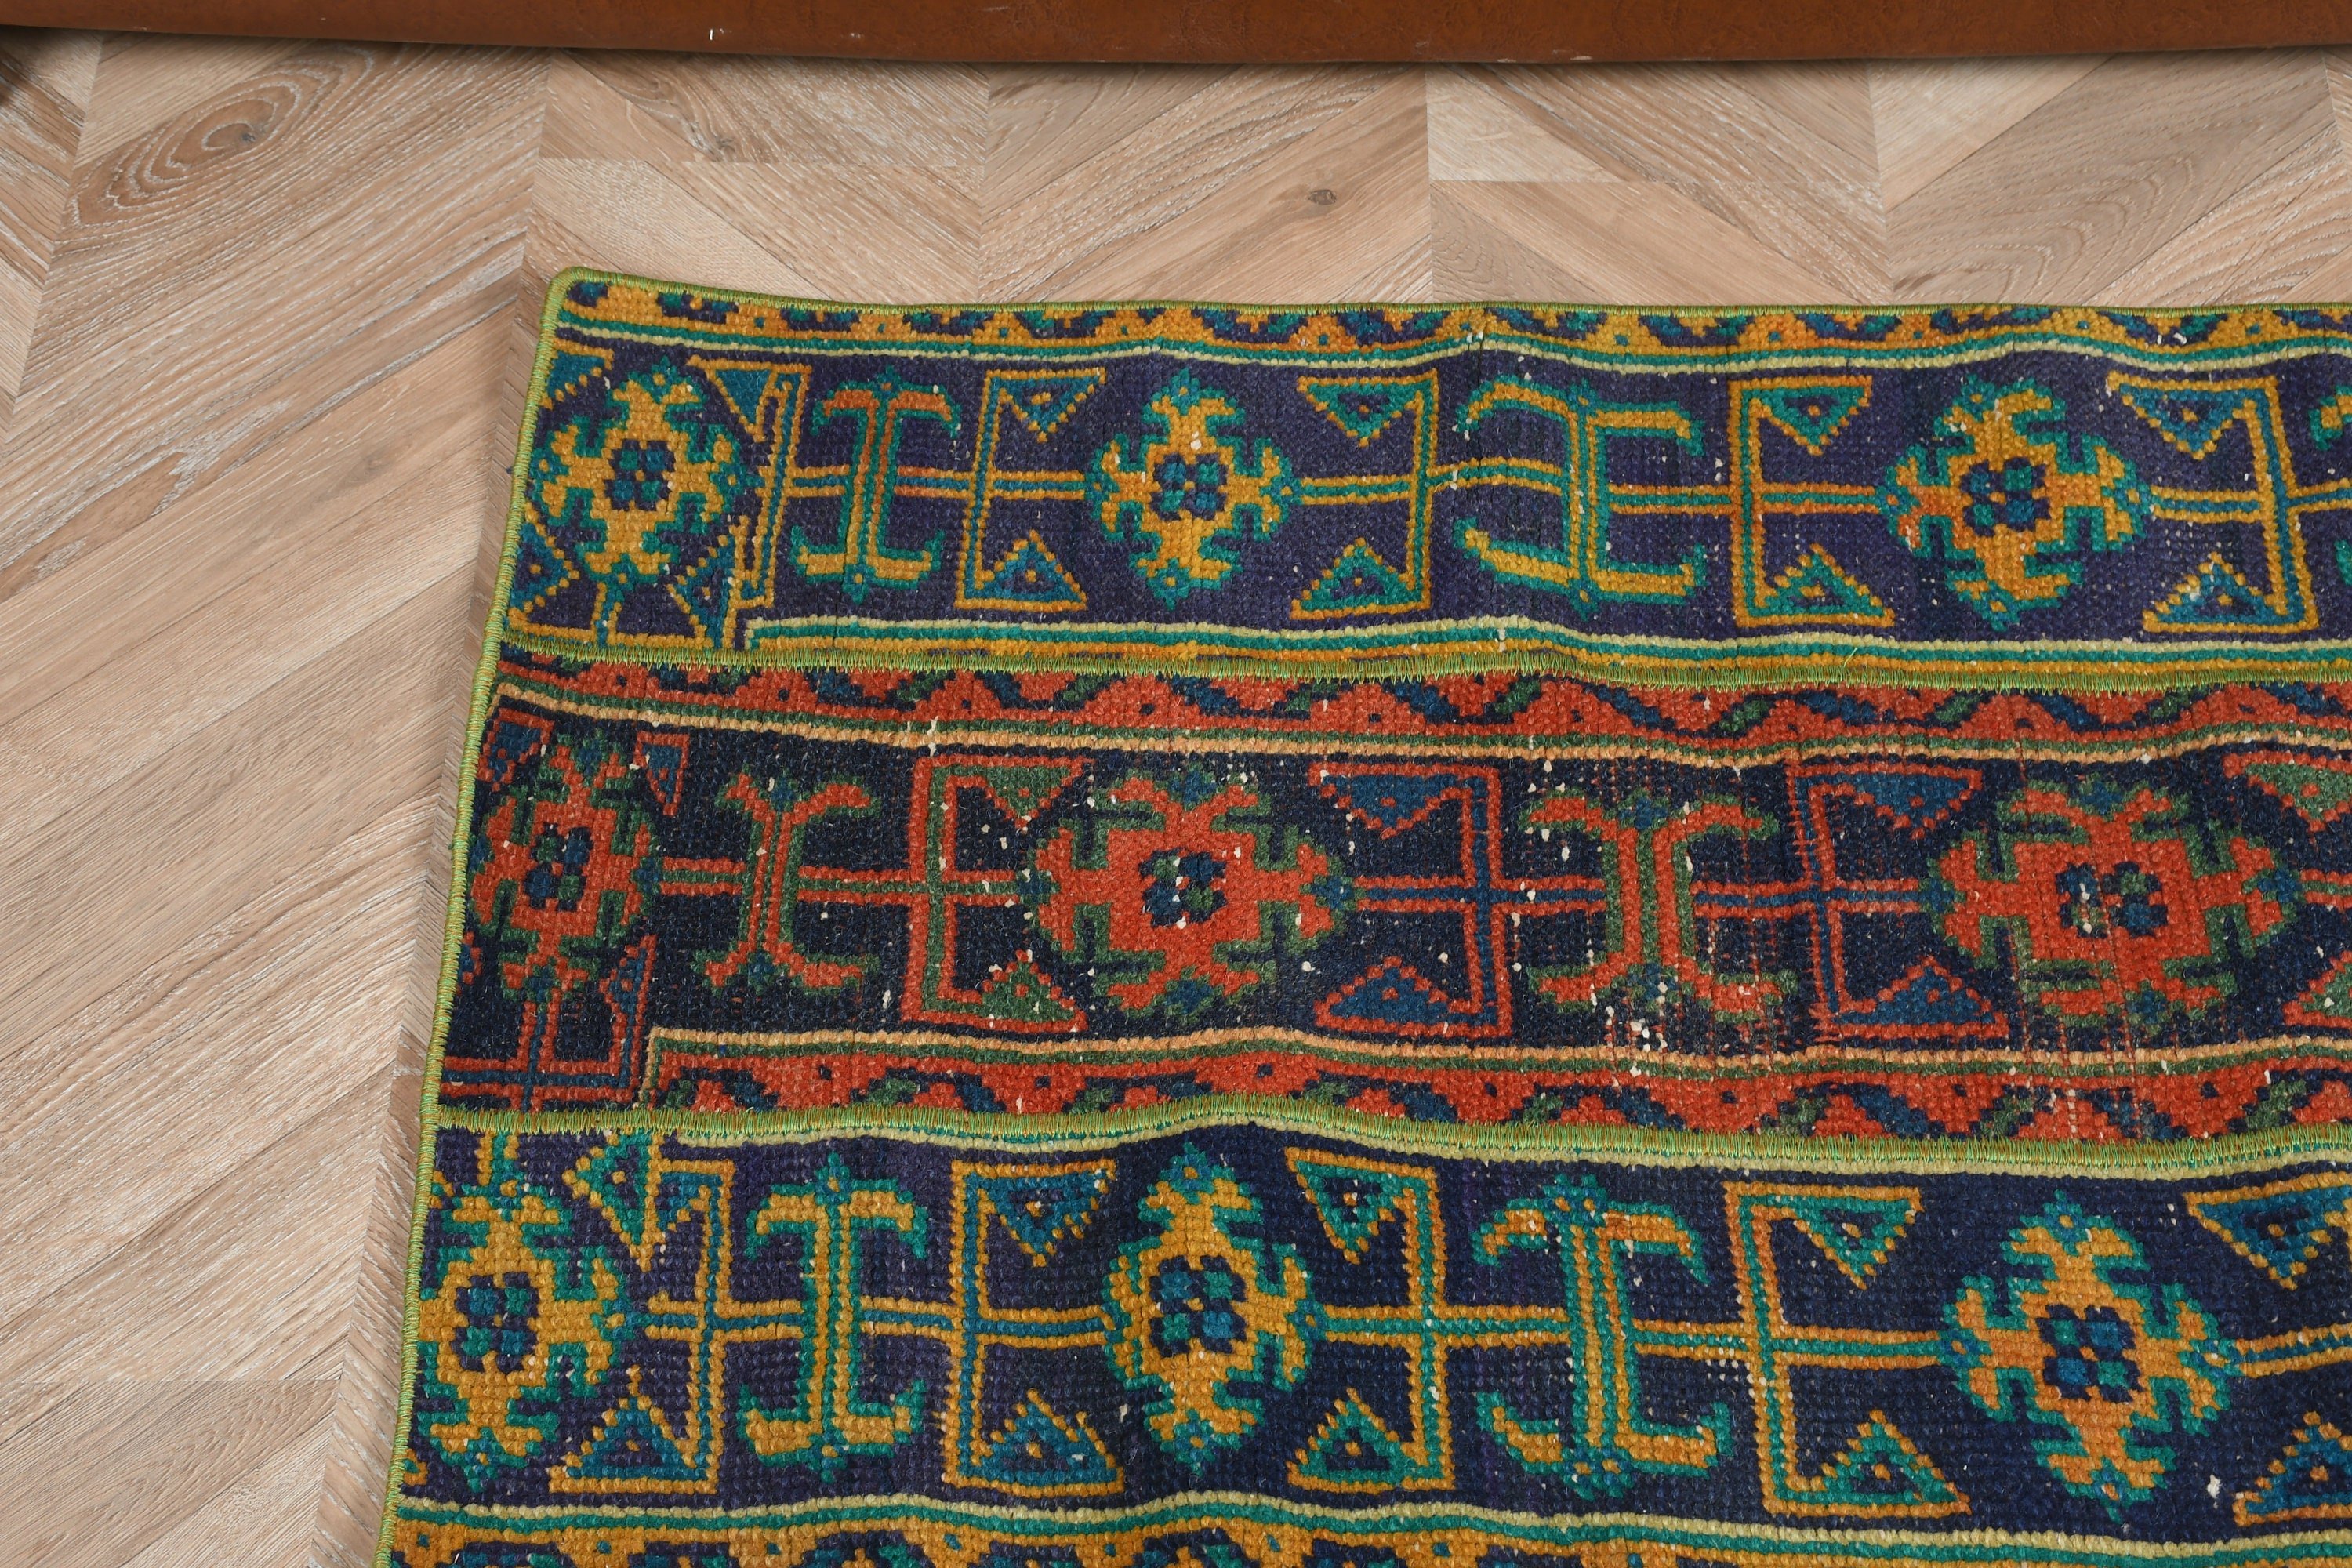 Oriental Rug, Rugs for Door Mat, Wool Rug, Blue Moroccan Rugs, Bathroom Rug, Vintage Rugs, Turkish Rug, 1.9x4.1 ft Small Rugs, Car Mat Rug